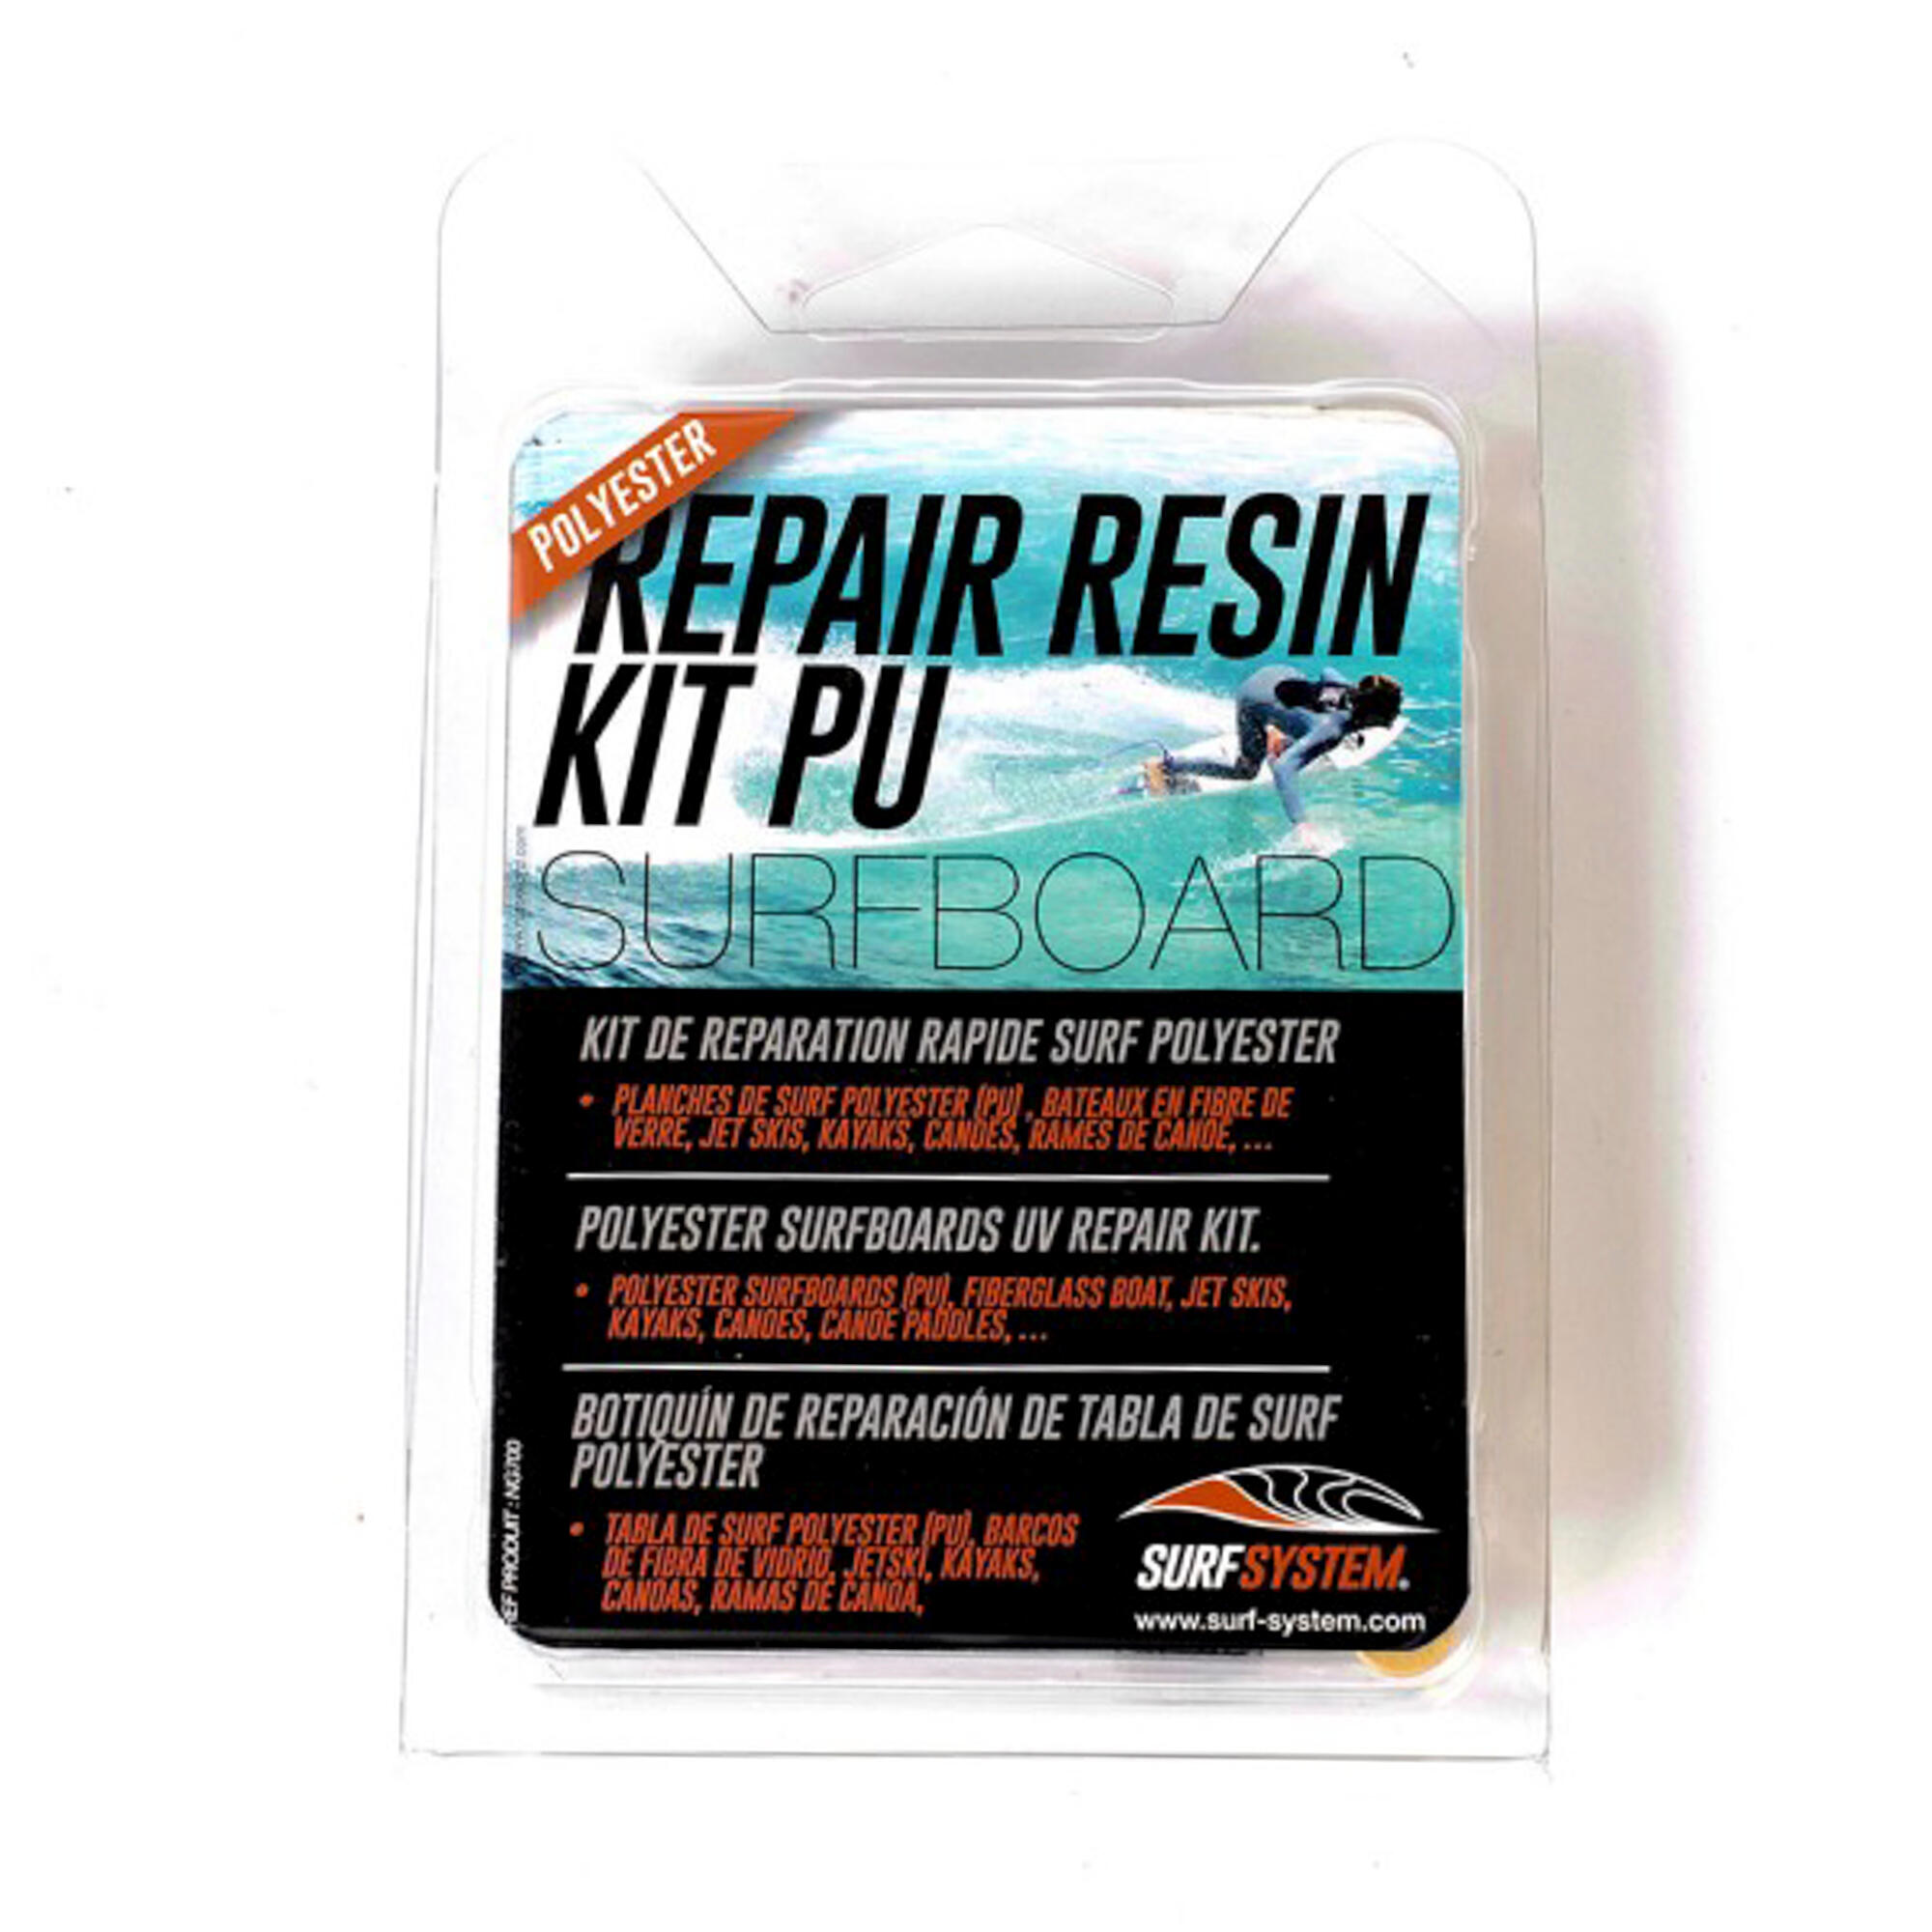 SURFSYSTEM Repair Kit for Polyester Resin Surfboard.